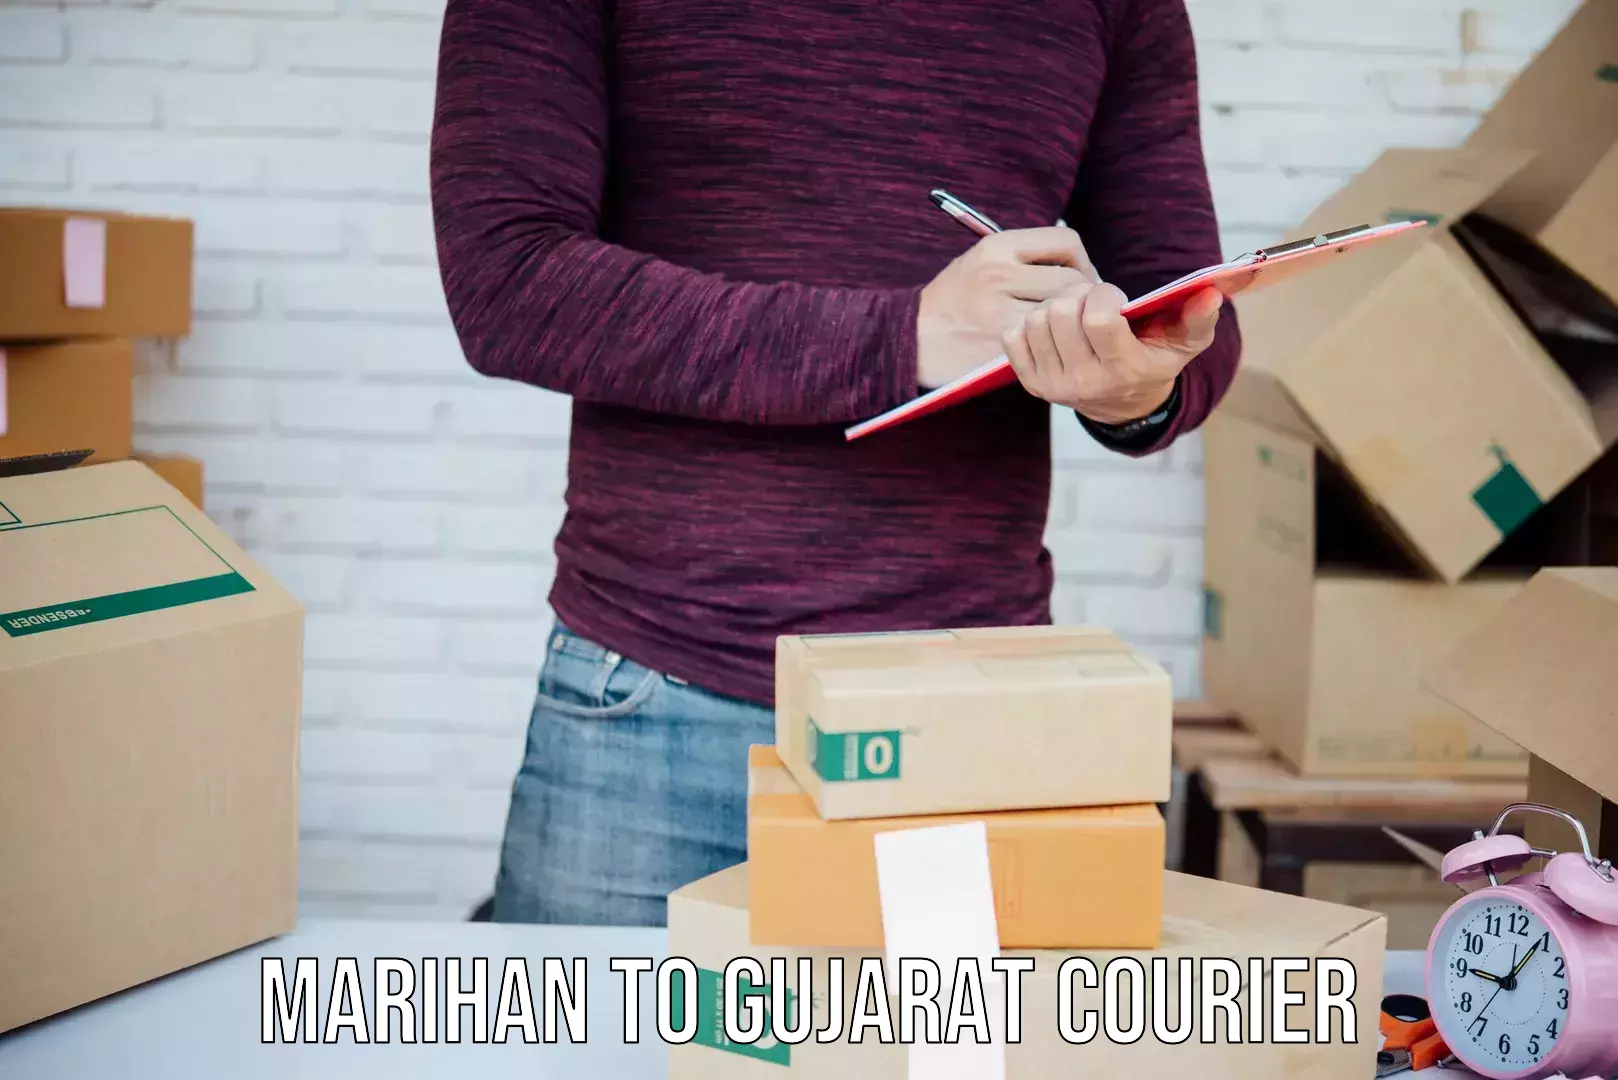 Quick dispatch service Marihan to Gujarat